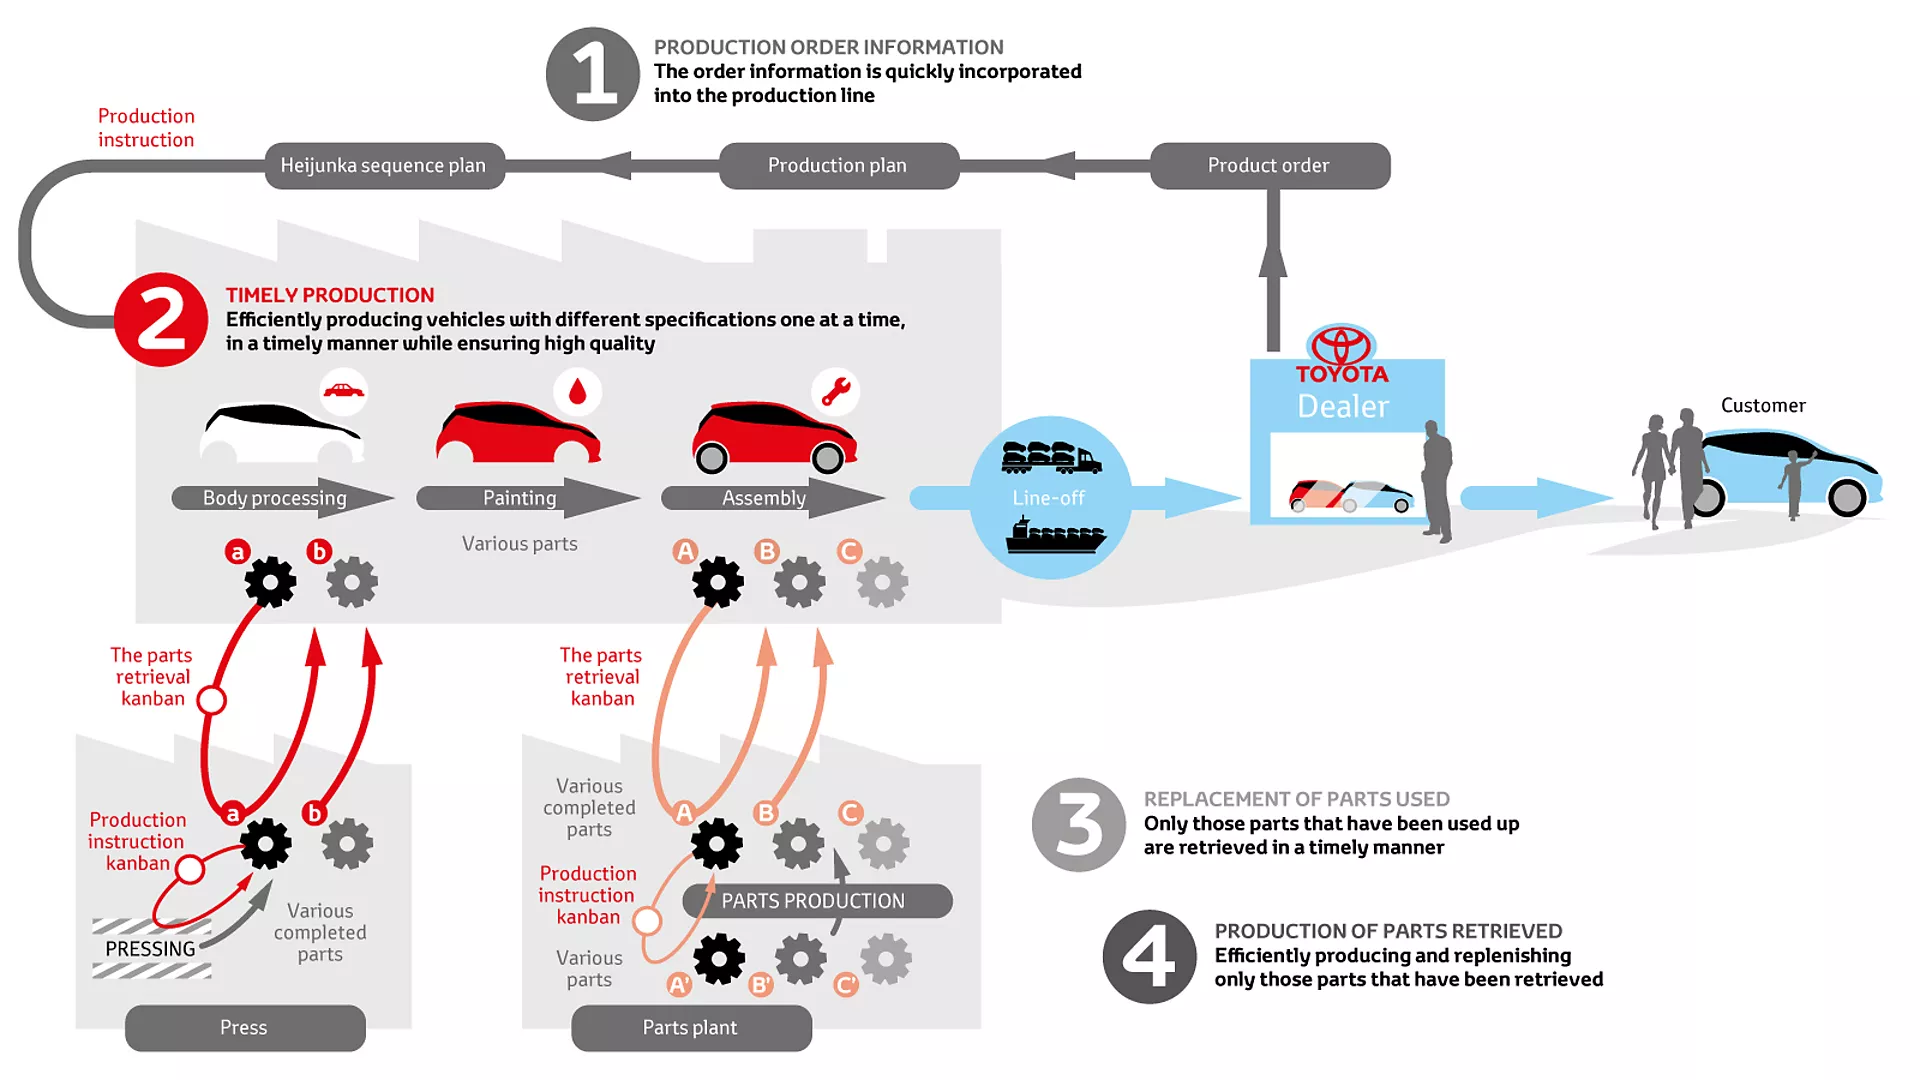 Ilustração do sistema de produção da Toyota, que utiliza o sistema just-in-time.